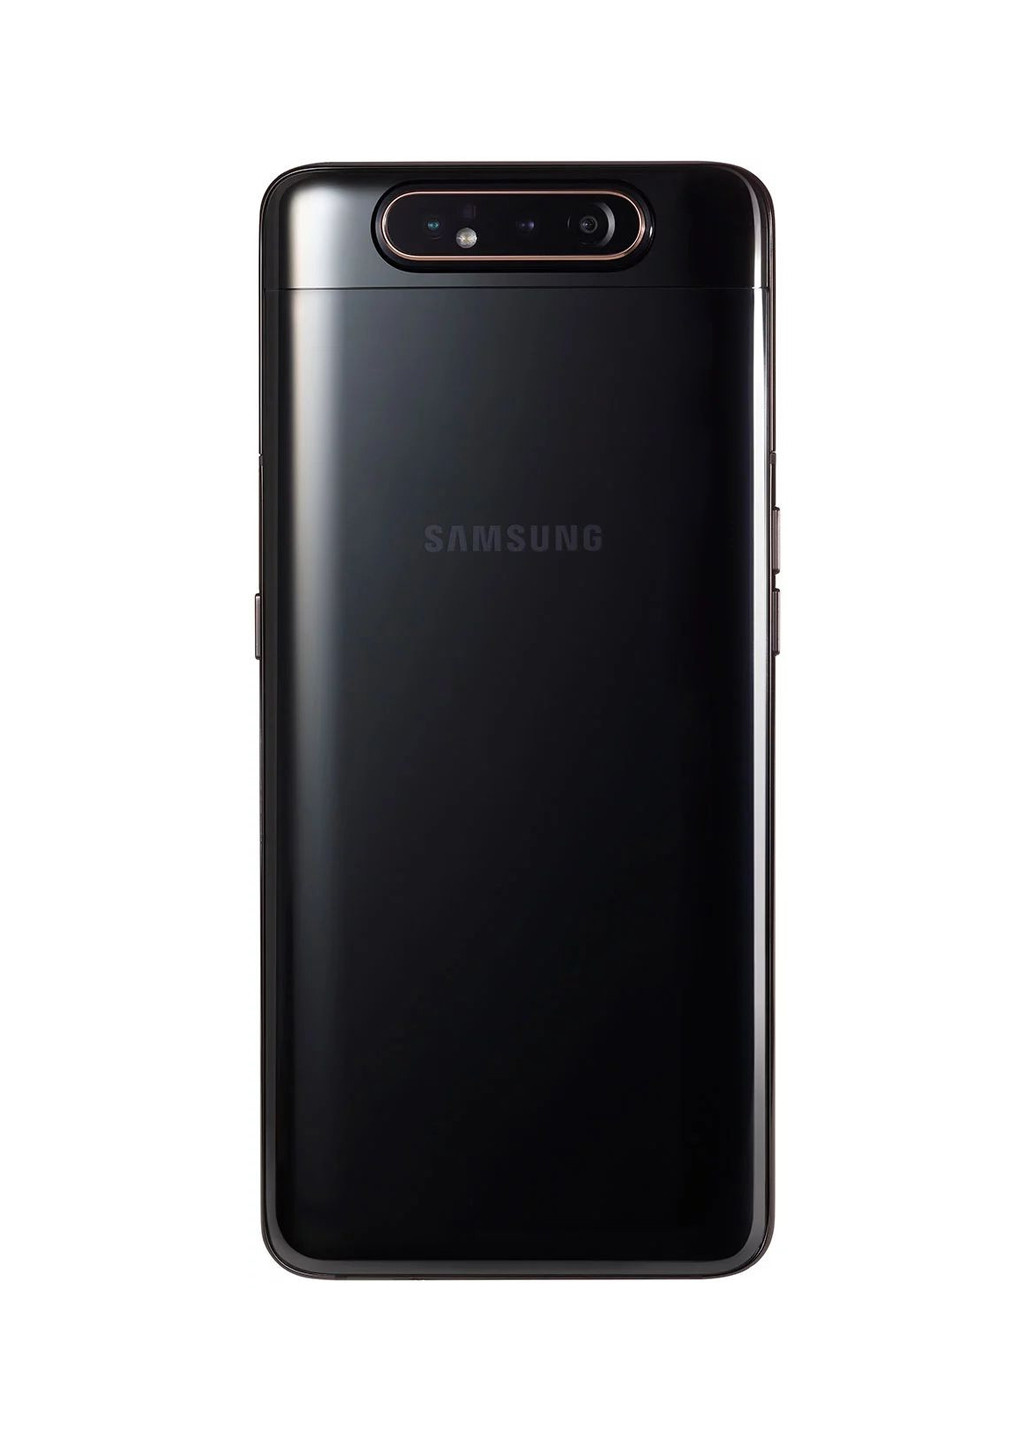 Смартфон Galaxy A80 8 / 128GB Black (SM-A805FZKDSEK) Samsung Galaxy A80 8/128GB Black (SM-A805FZKDSEK) чорний